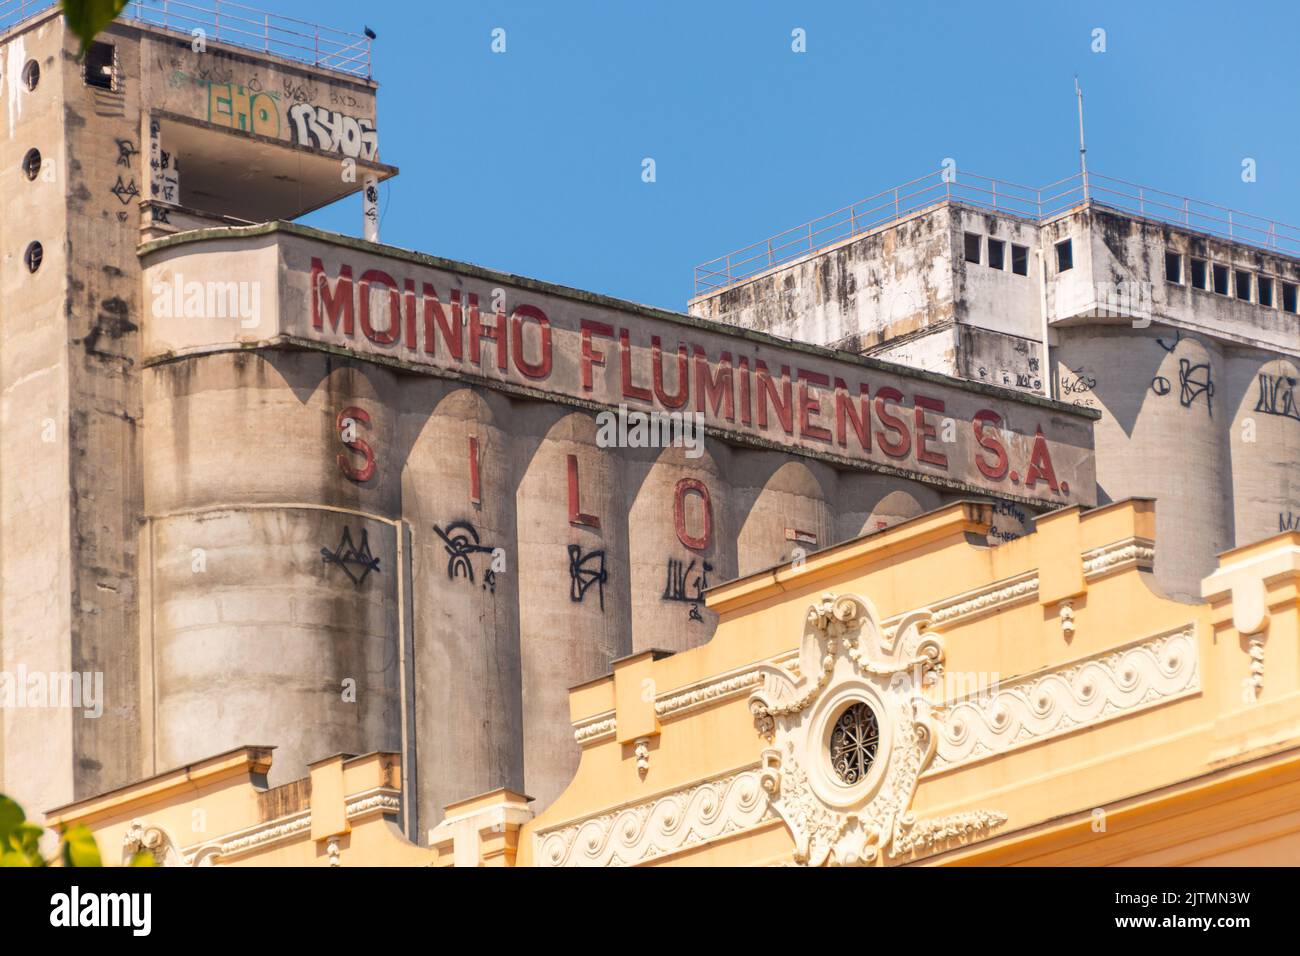 Facciata della costruzione del mulino Fluminense a Rio de Janeiro, Brasile - 6 settembre 2020: Facciata del vecchio edificio del mulino Fluminense nel Foto Stock